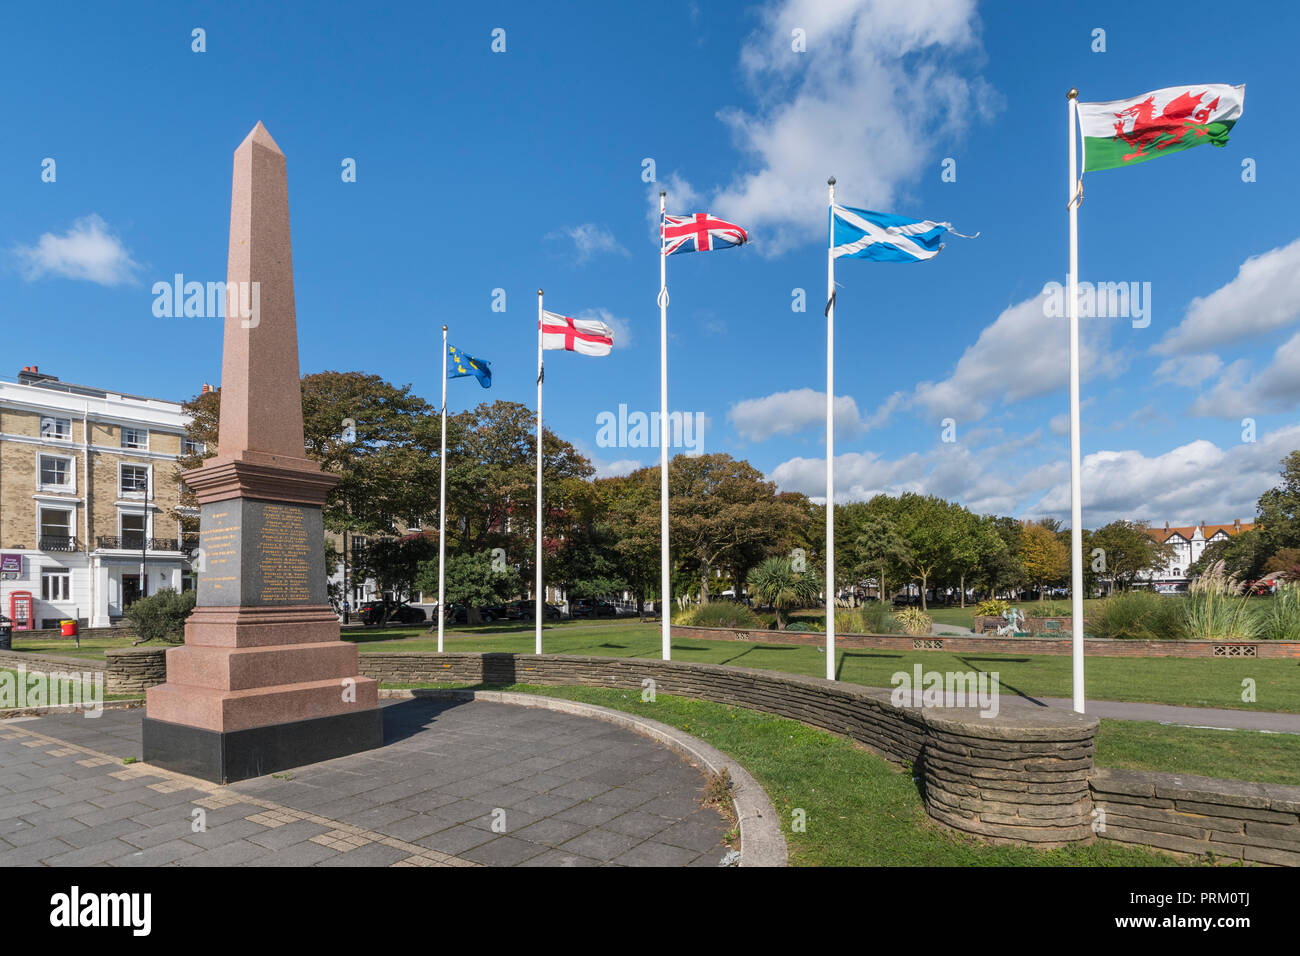 Memoriale di guerra per i morti della guerra sudafricana (1899-1902) in giardini Steyne a Worthing West Sussex, in Inghilterra, Regno Unito. Monumento di guerra. Foto Stock